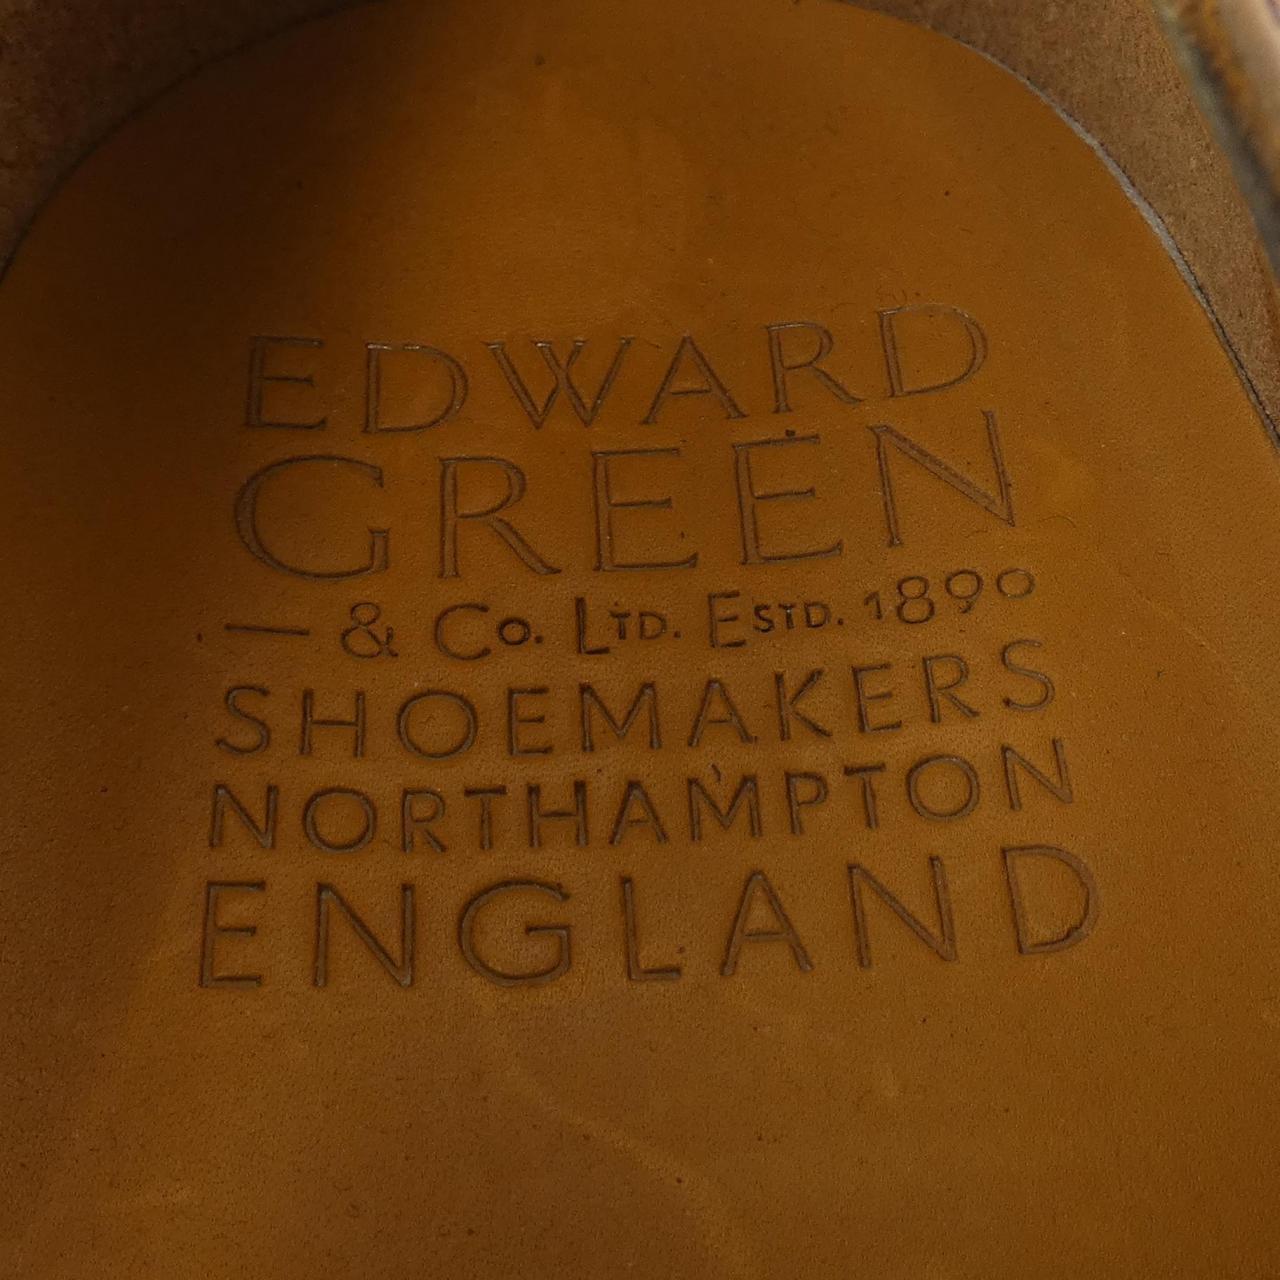 愛德華綠EDWARD GREEN鞋